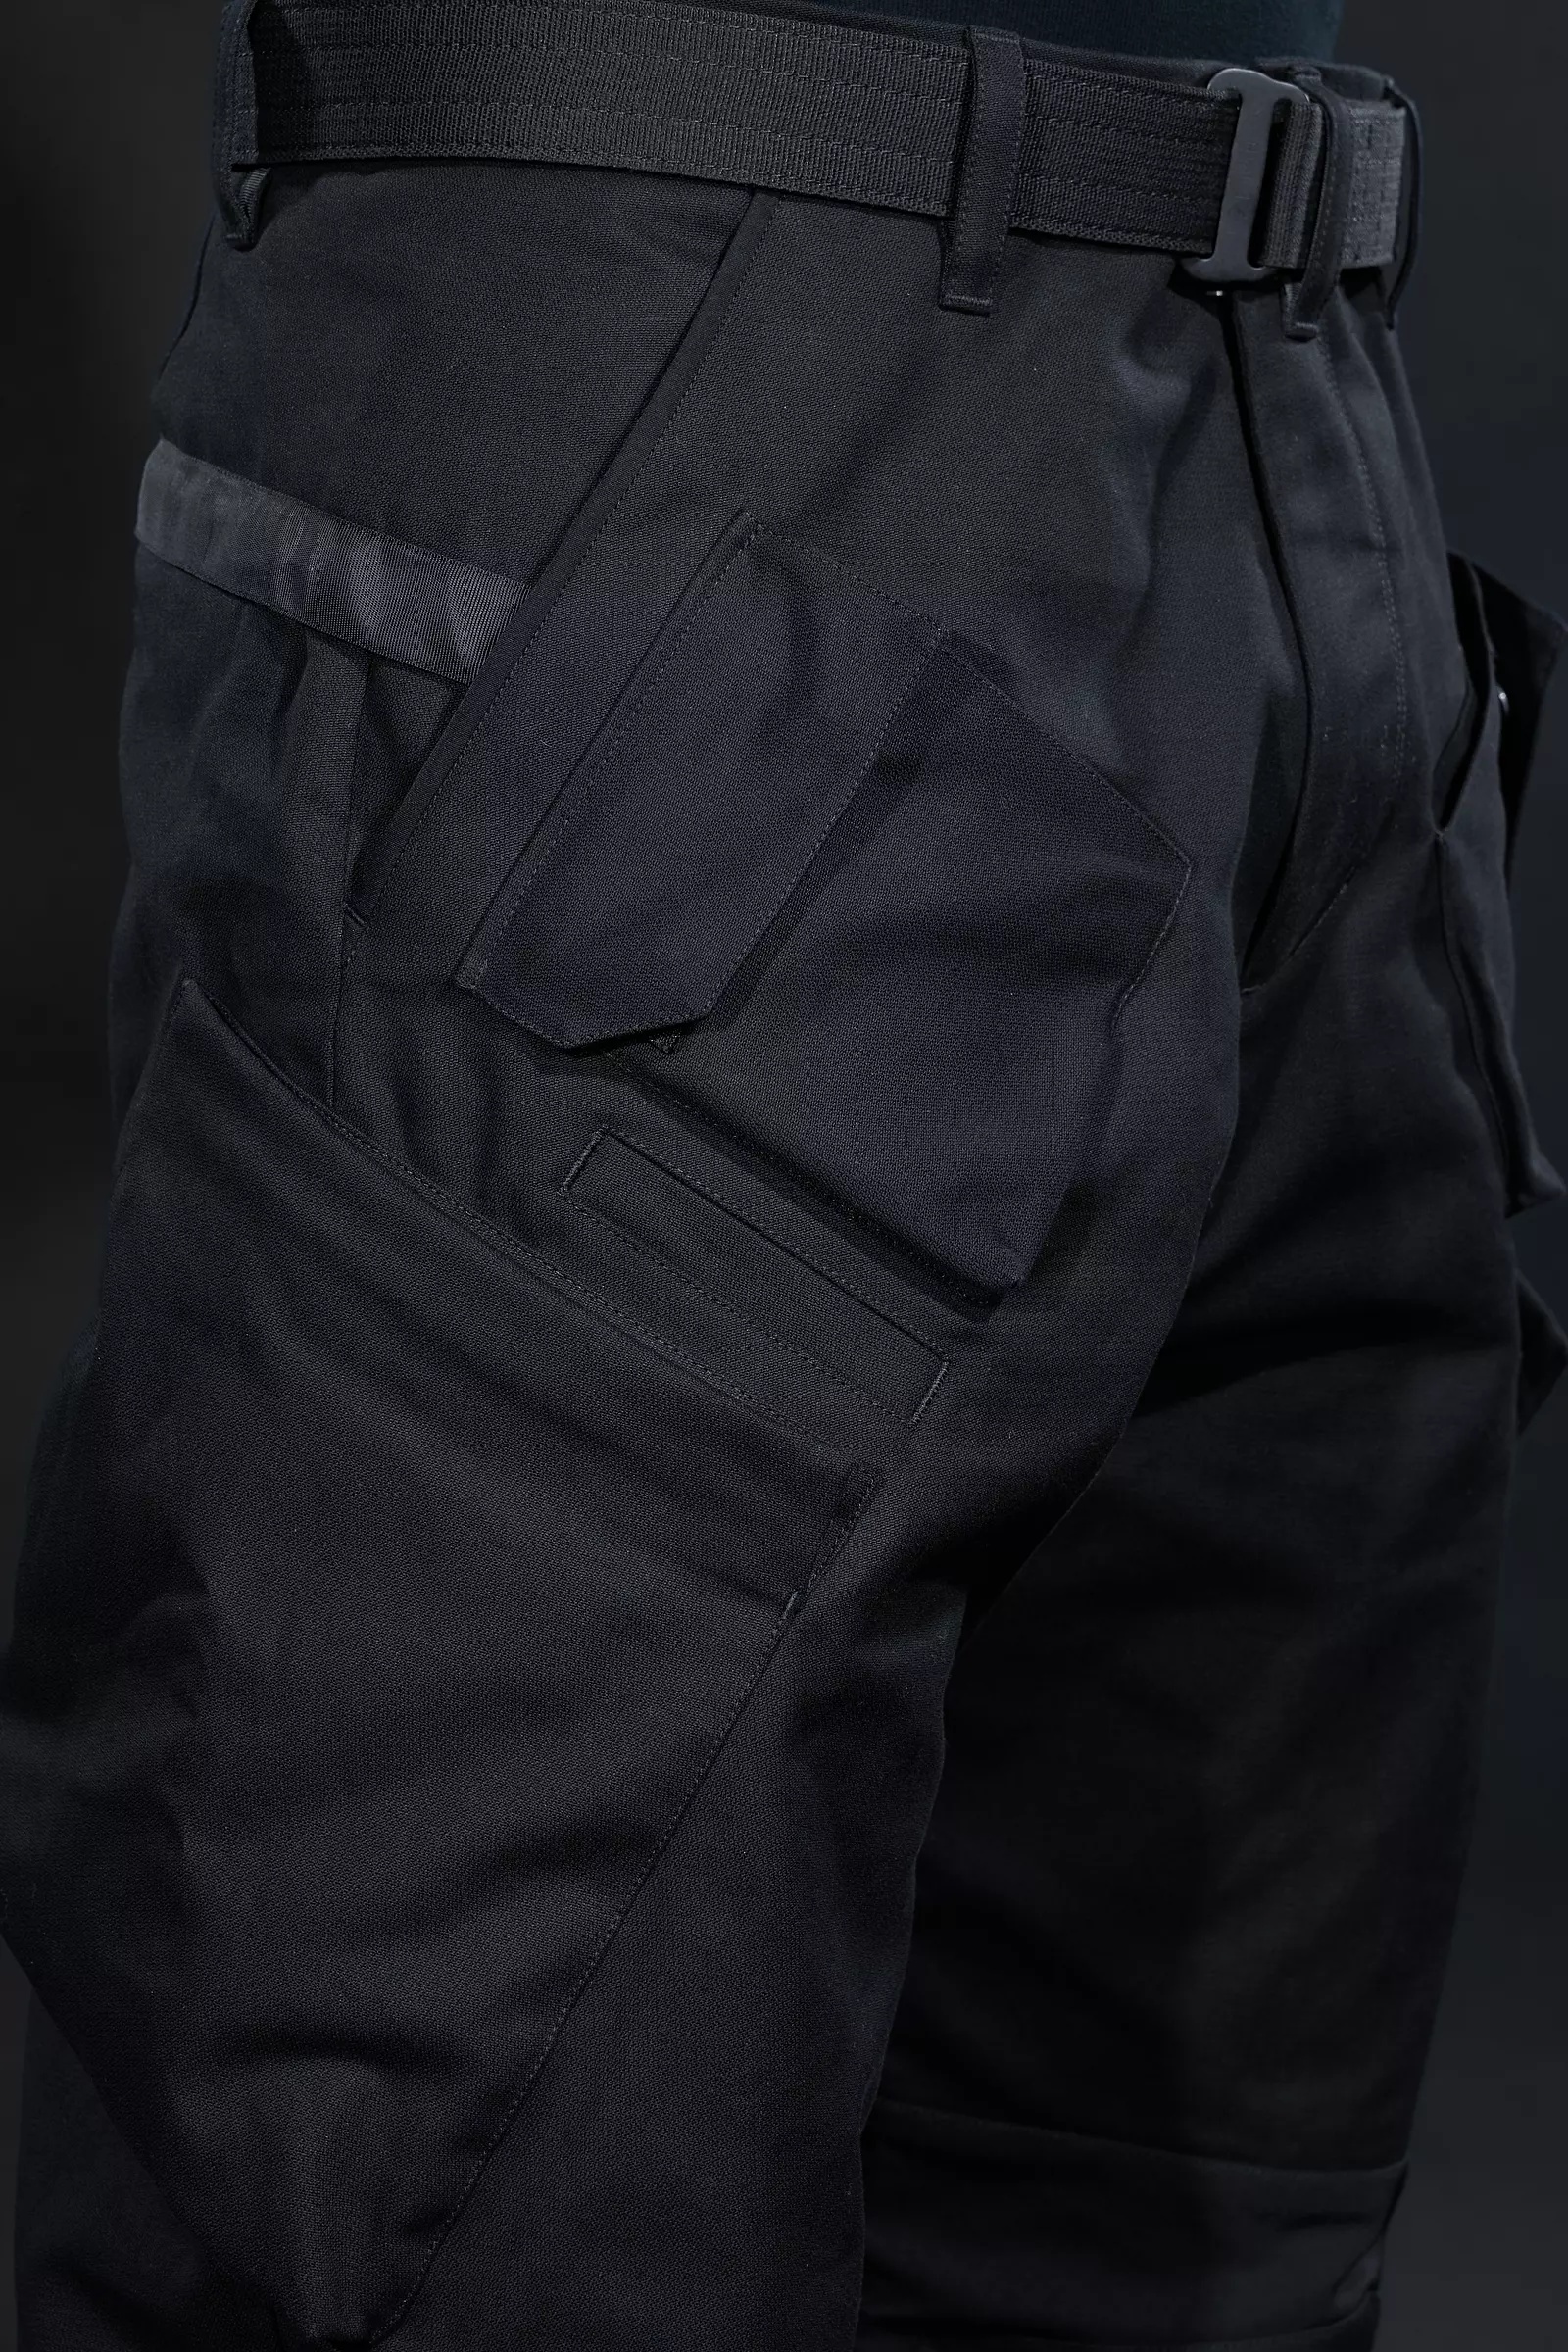 P24A-KI Cotton Articulated BDU Trouser - 15